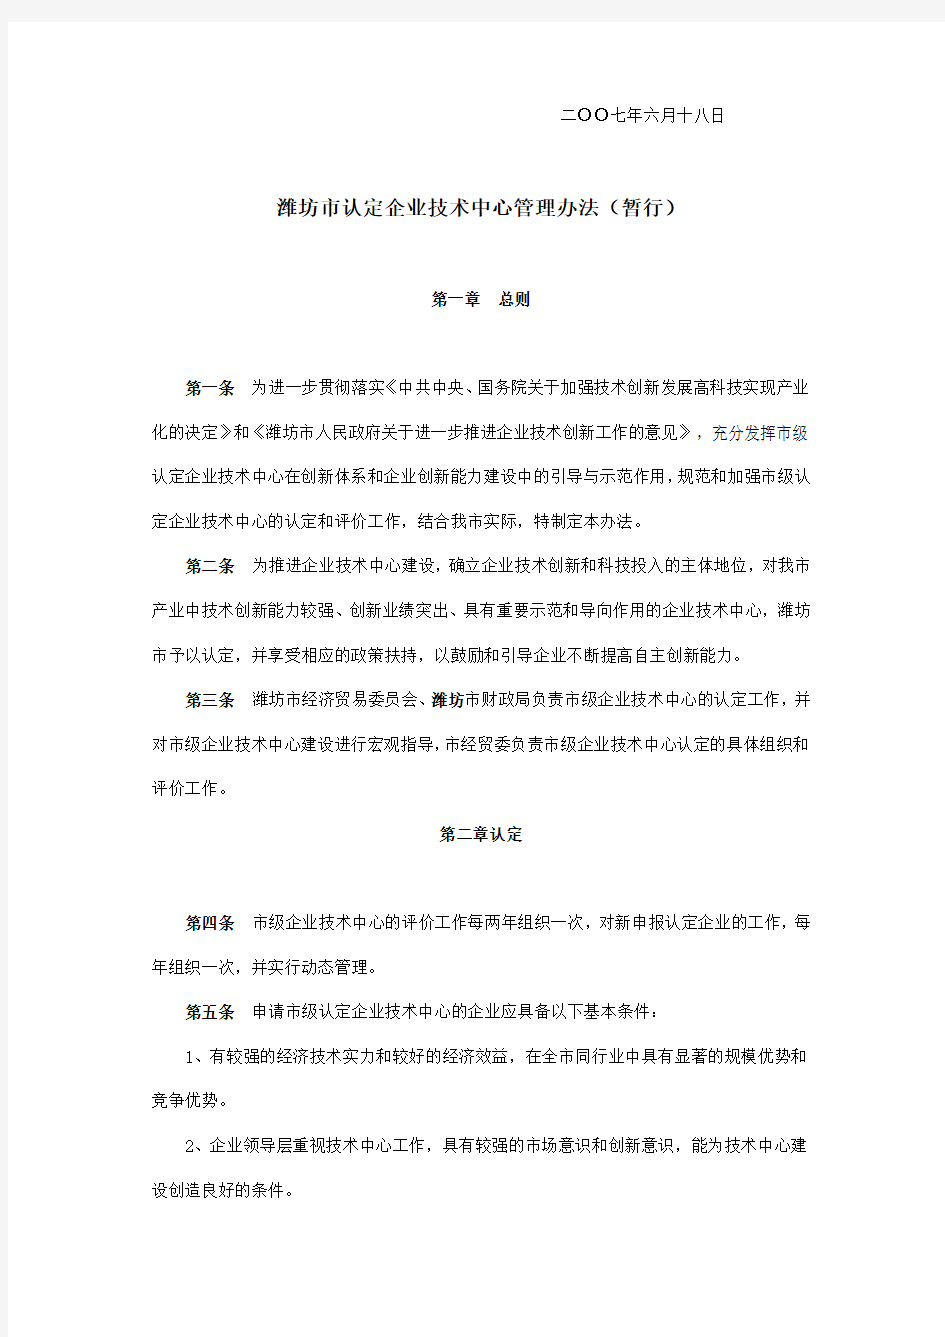 潍坊市认定企业技术中心管理办法(暂行)